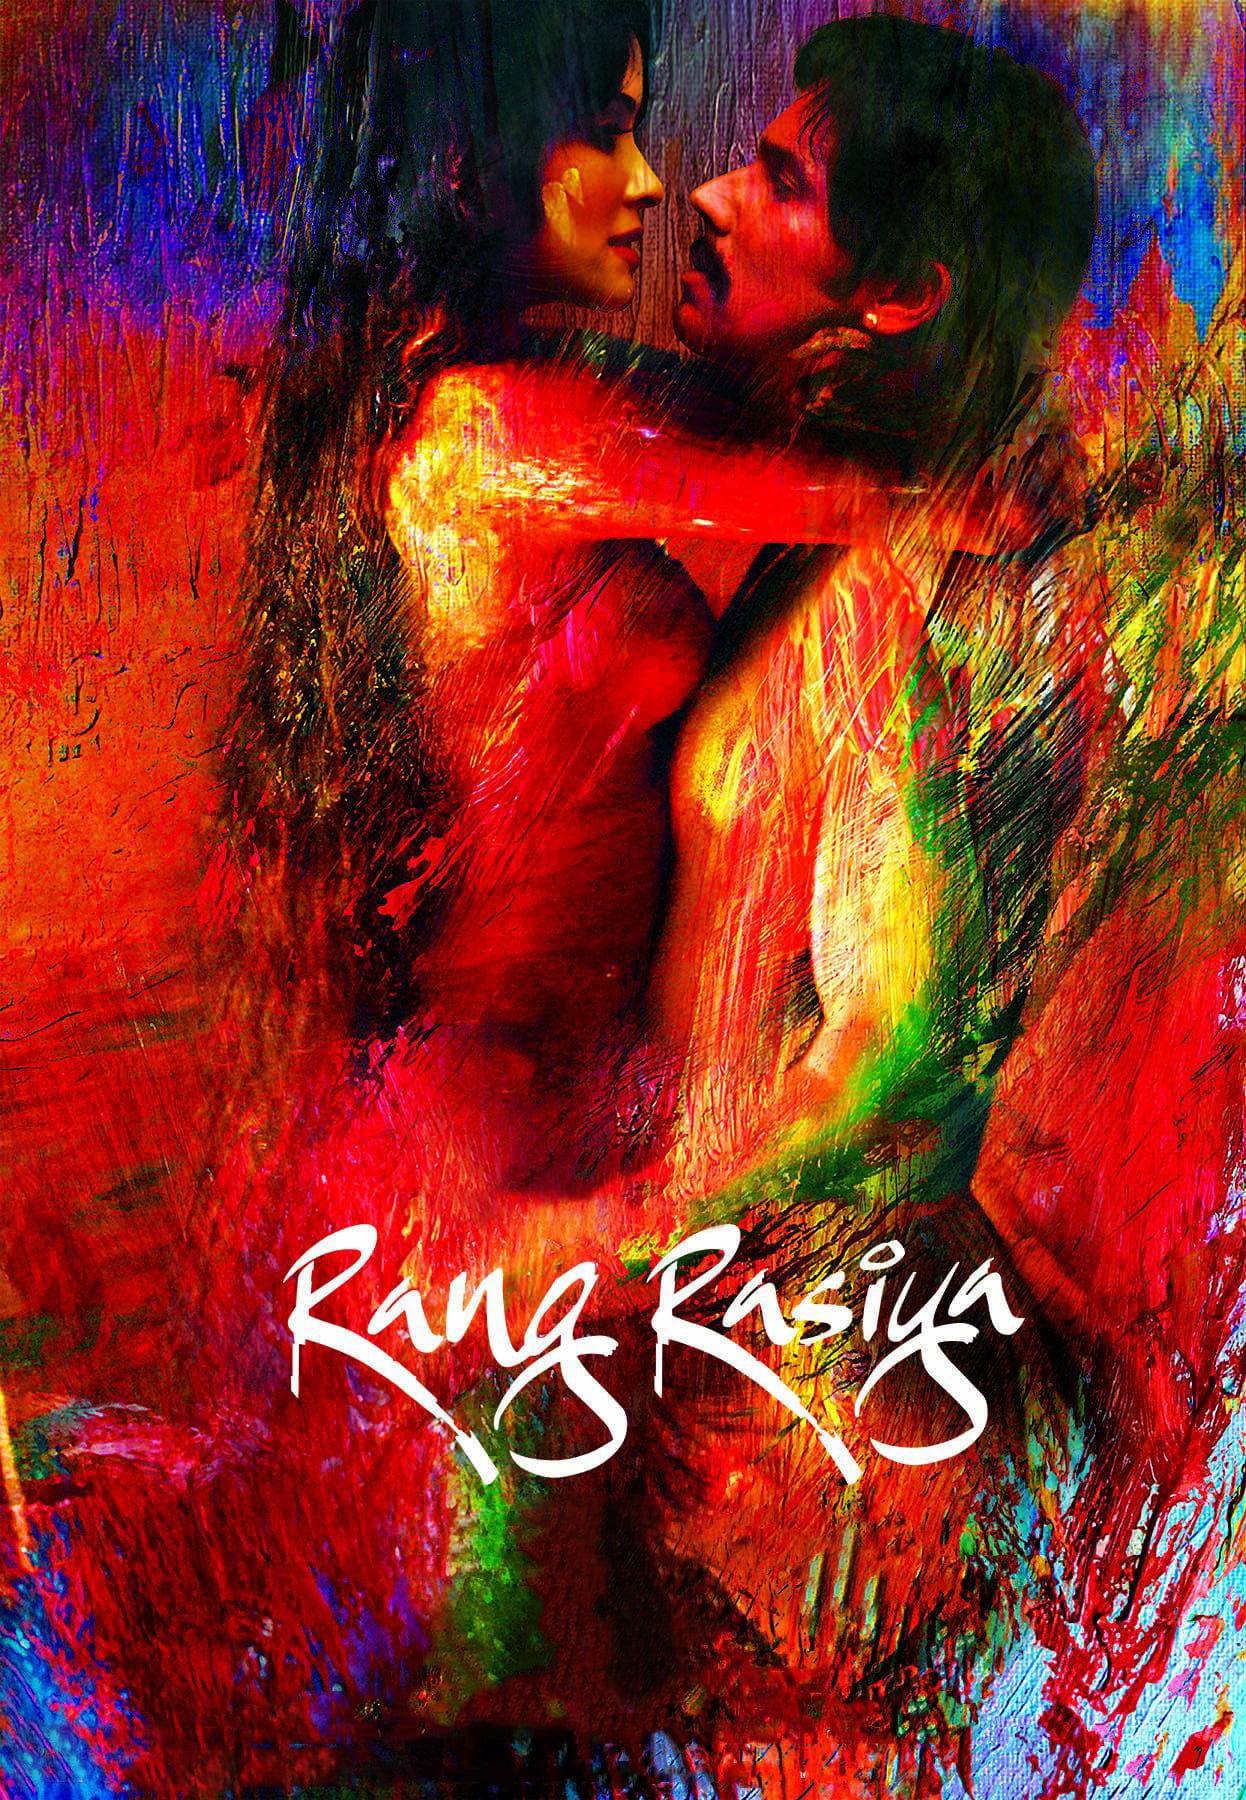 Poster for the movie "Rang Rasiya"